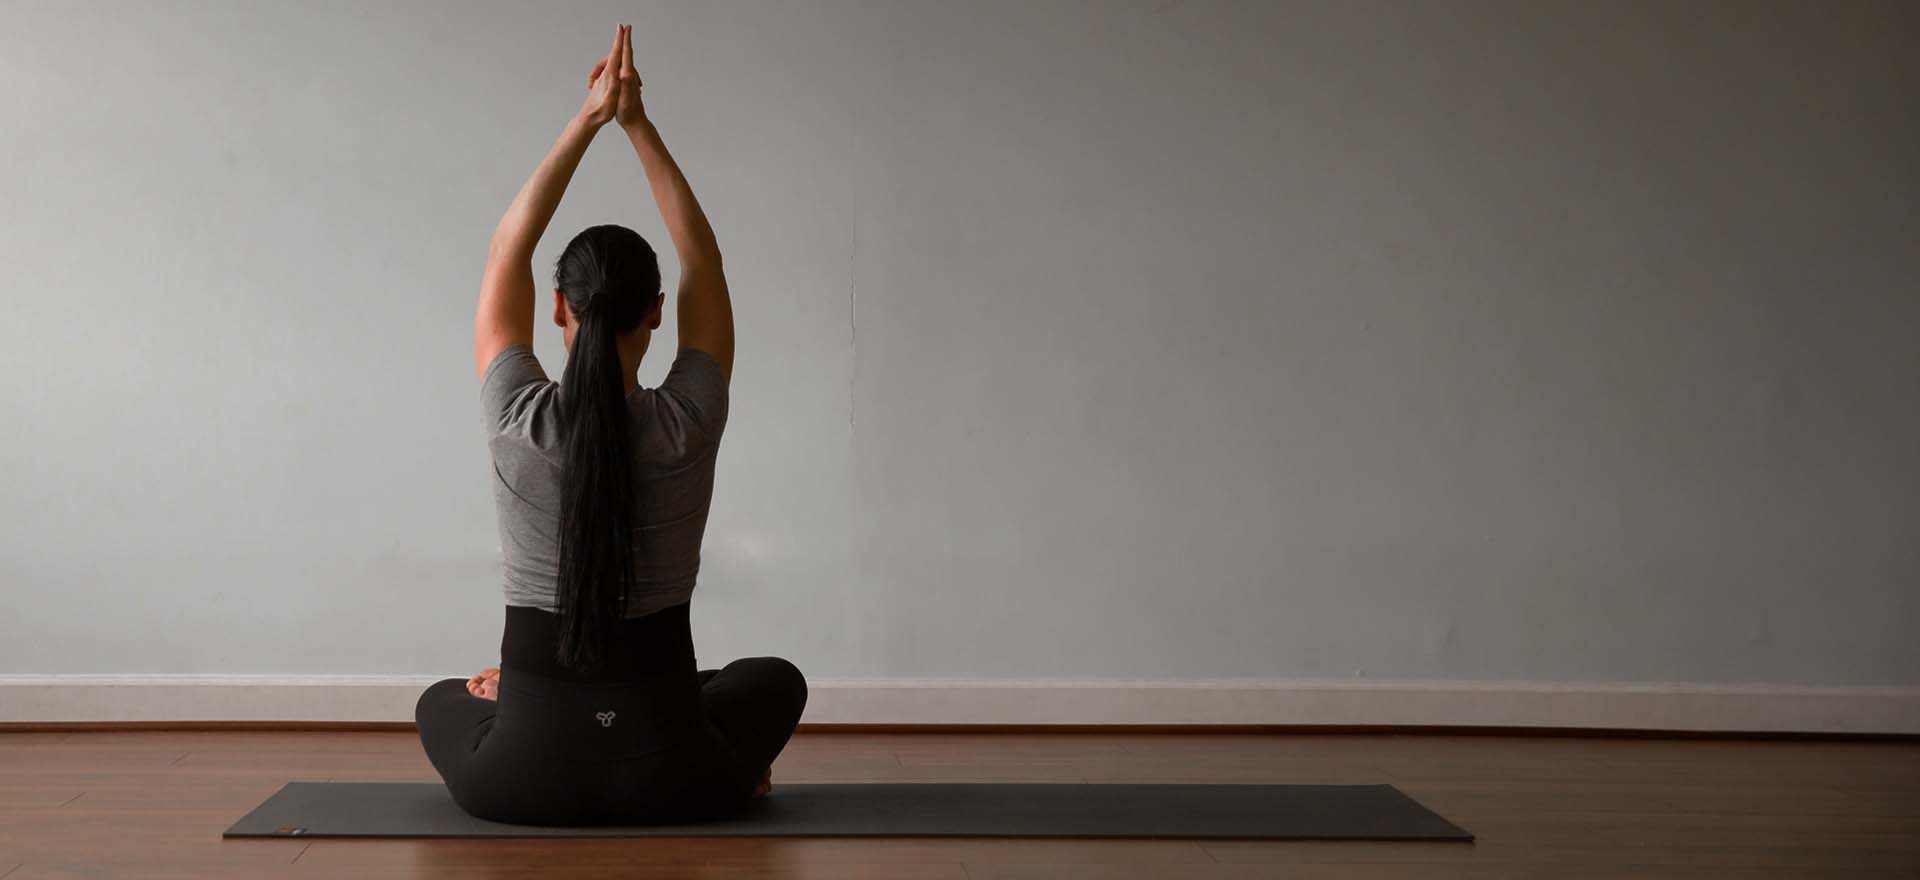 Open Door Yoga – Open Door Yoga offers yoga classes 7 days a week